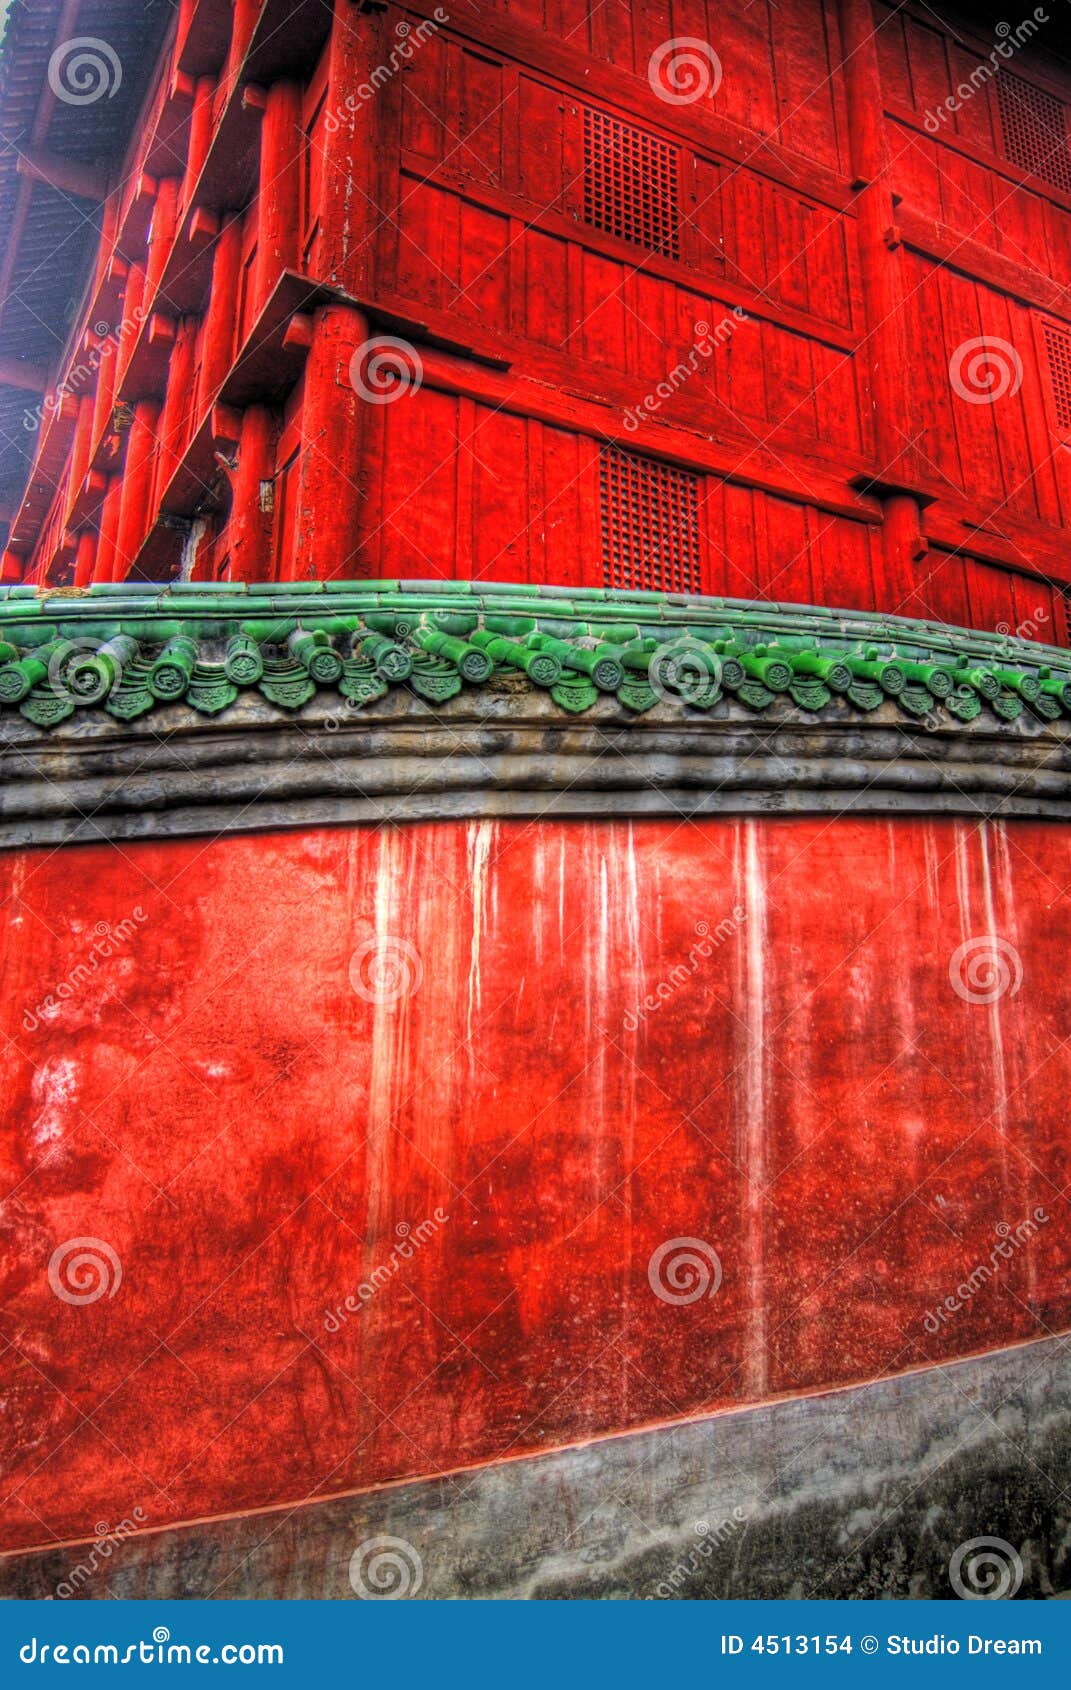  - paredes-rojas-del-templo-4513154